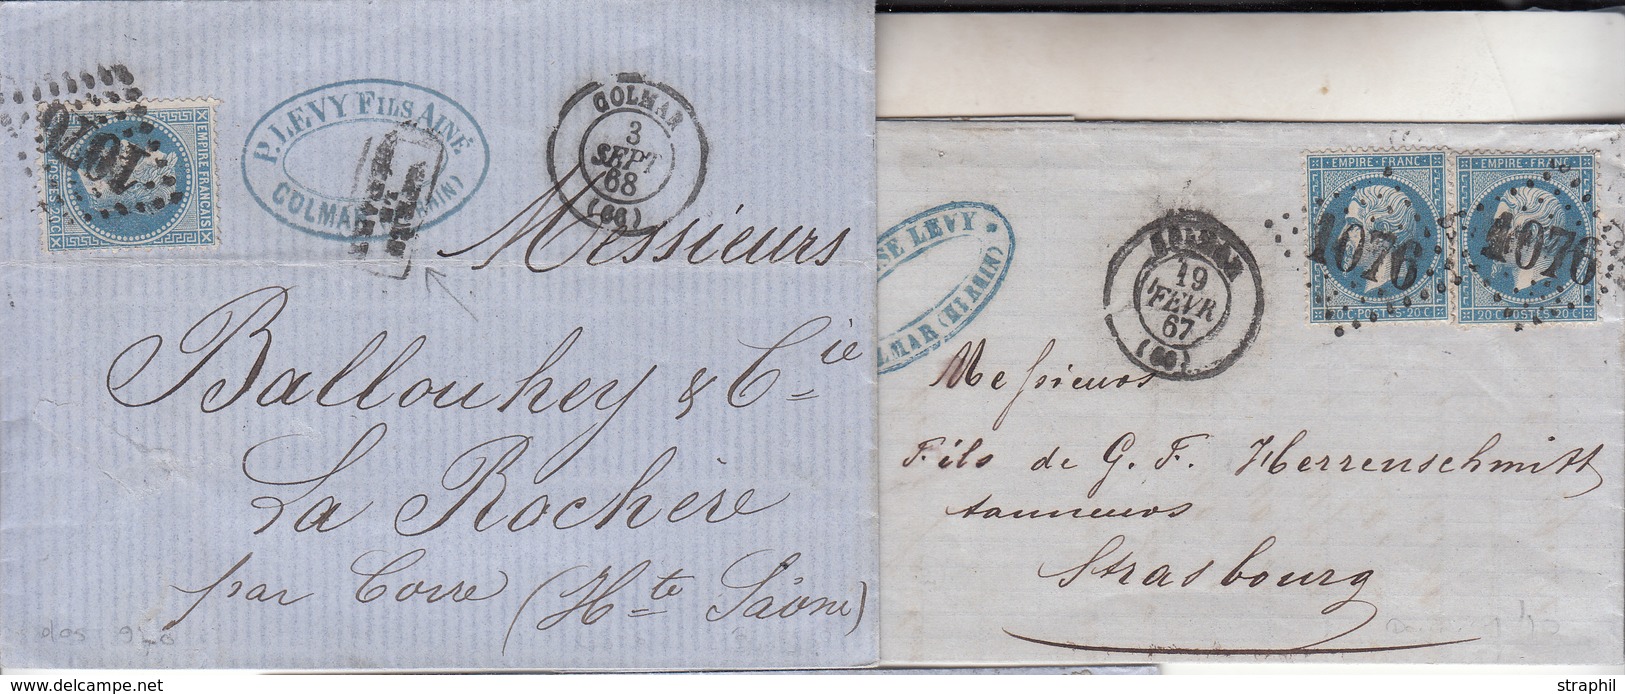 LAC 2 Plis Colmar - Datés 1867, 1868 (Dble Port) - TB - Brieven En Documenten